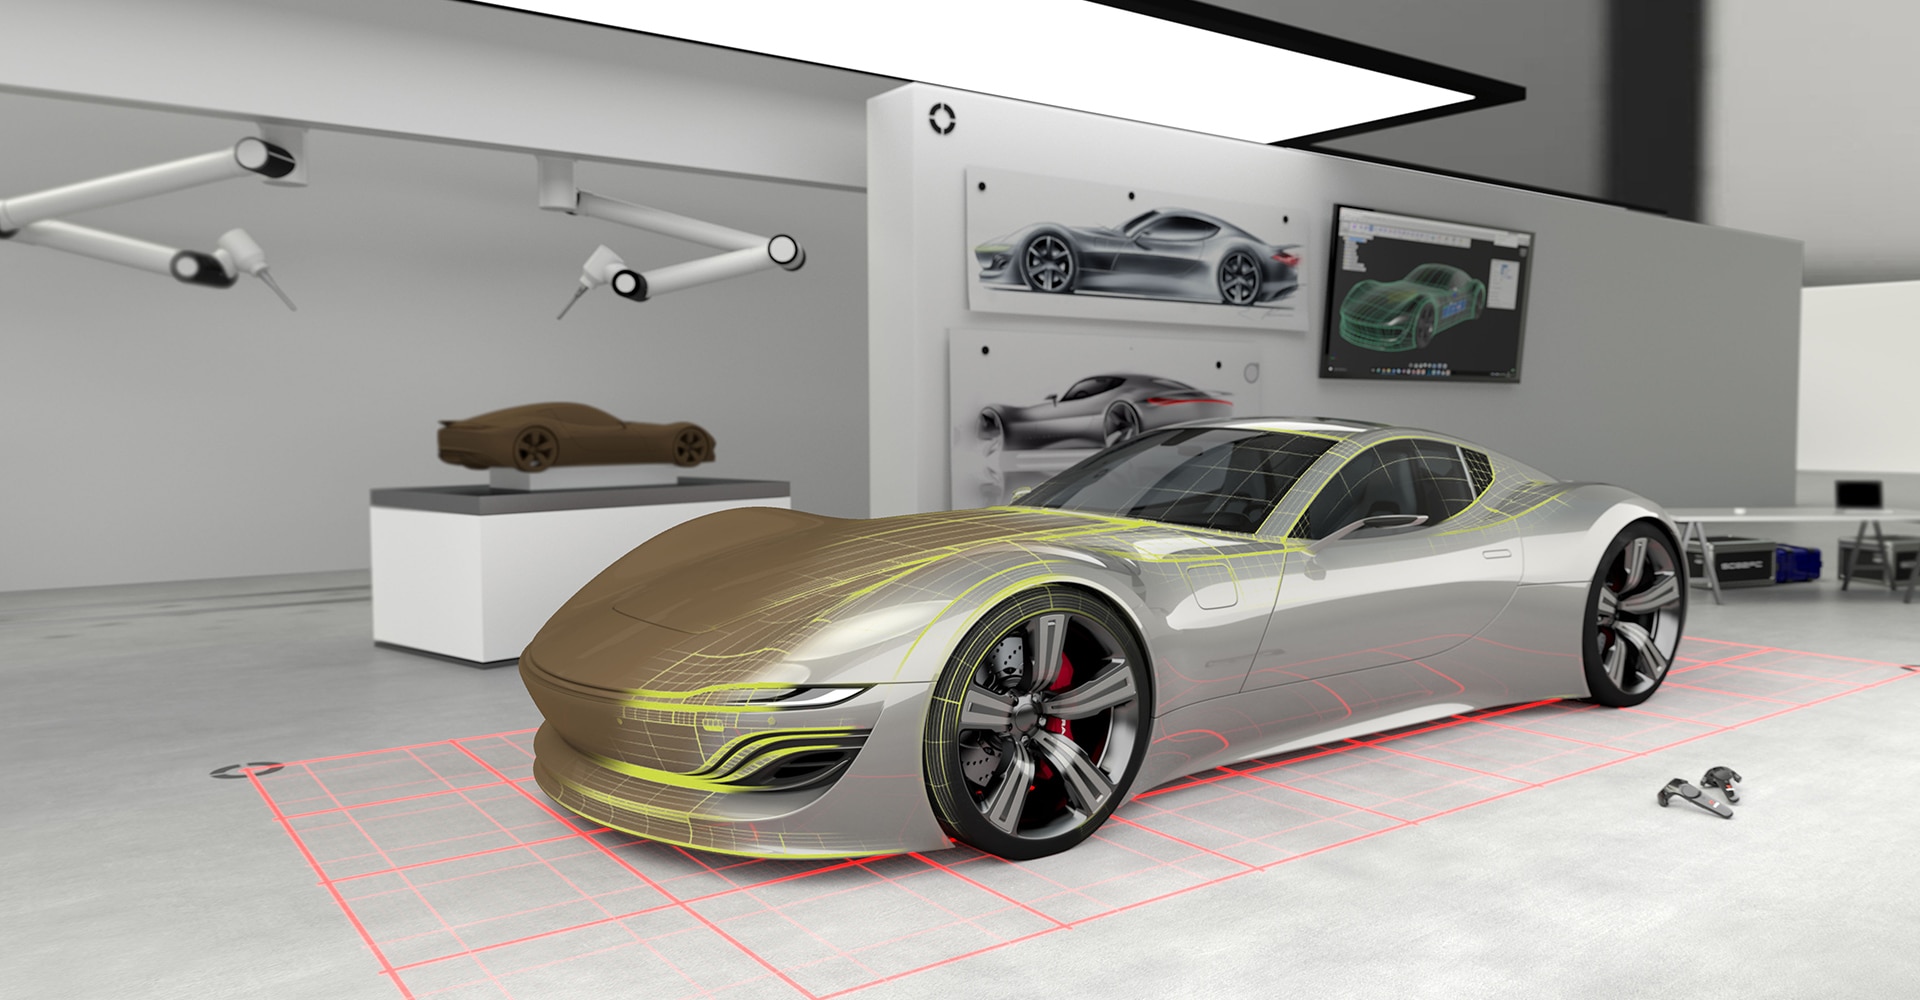 A glimpse into the car design studio of the future